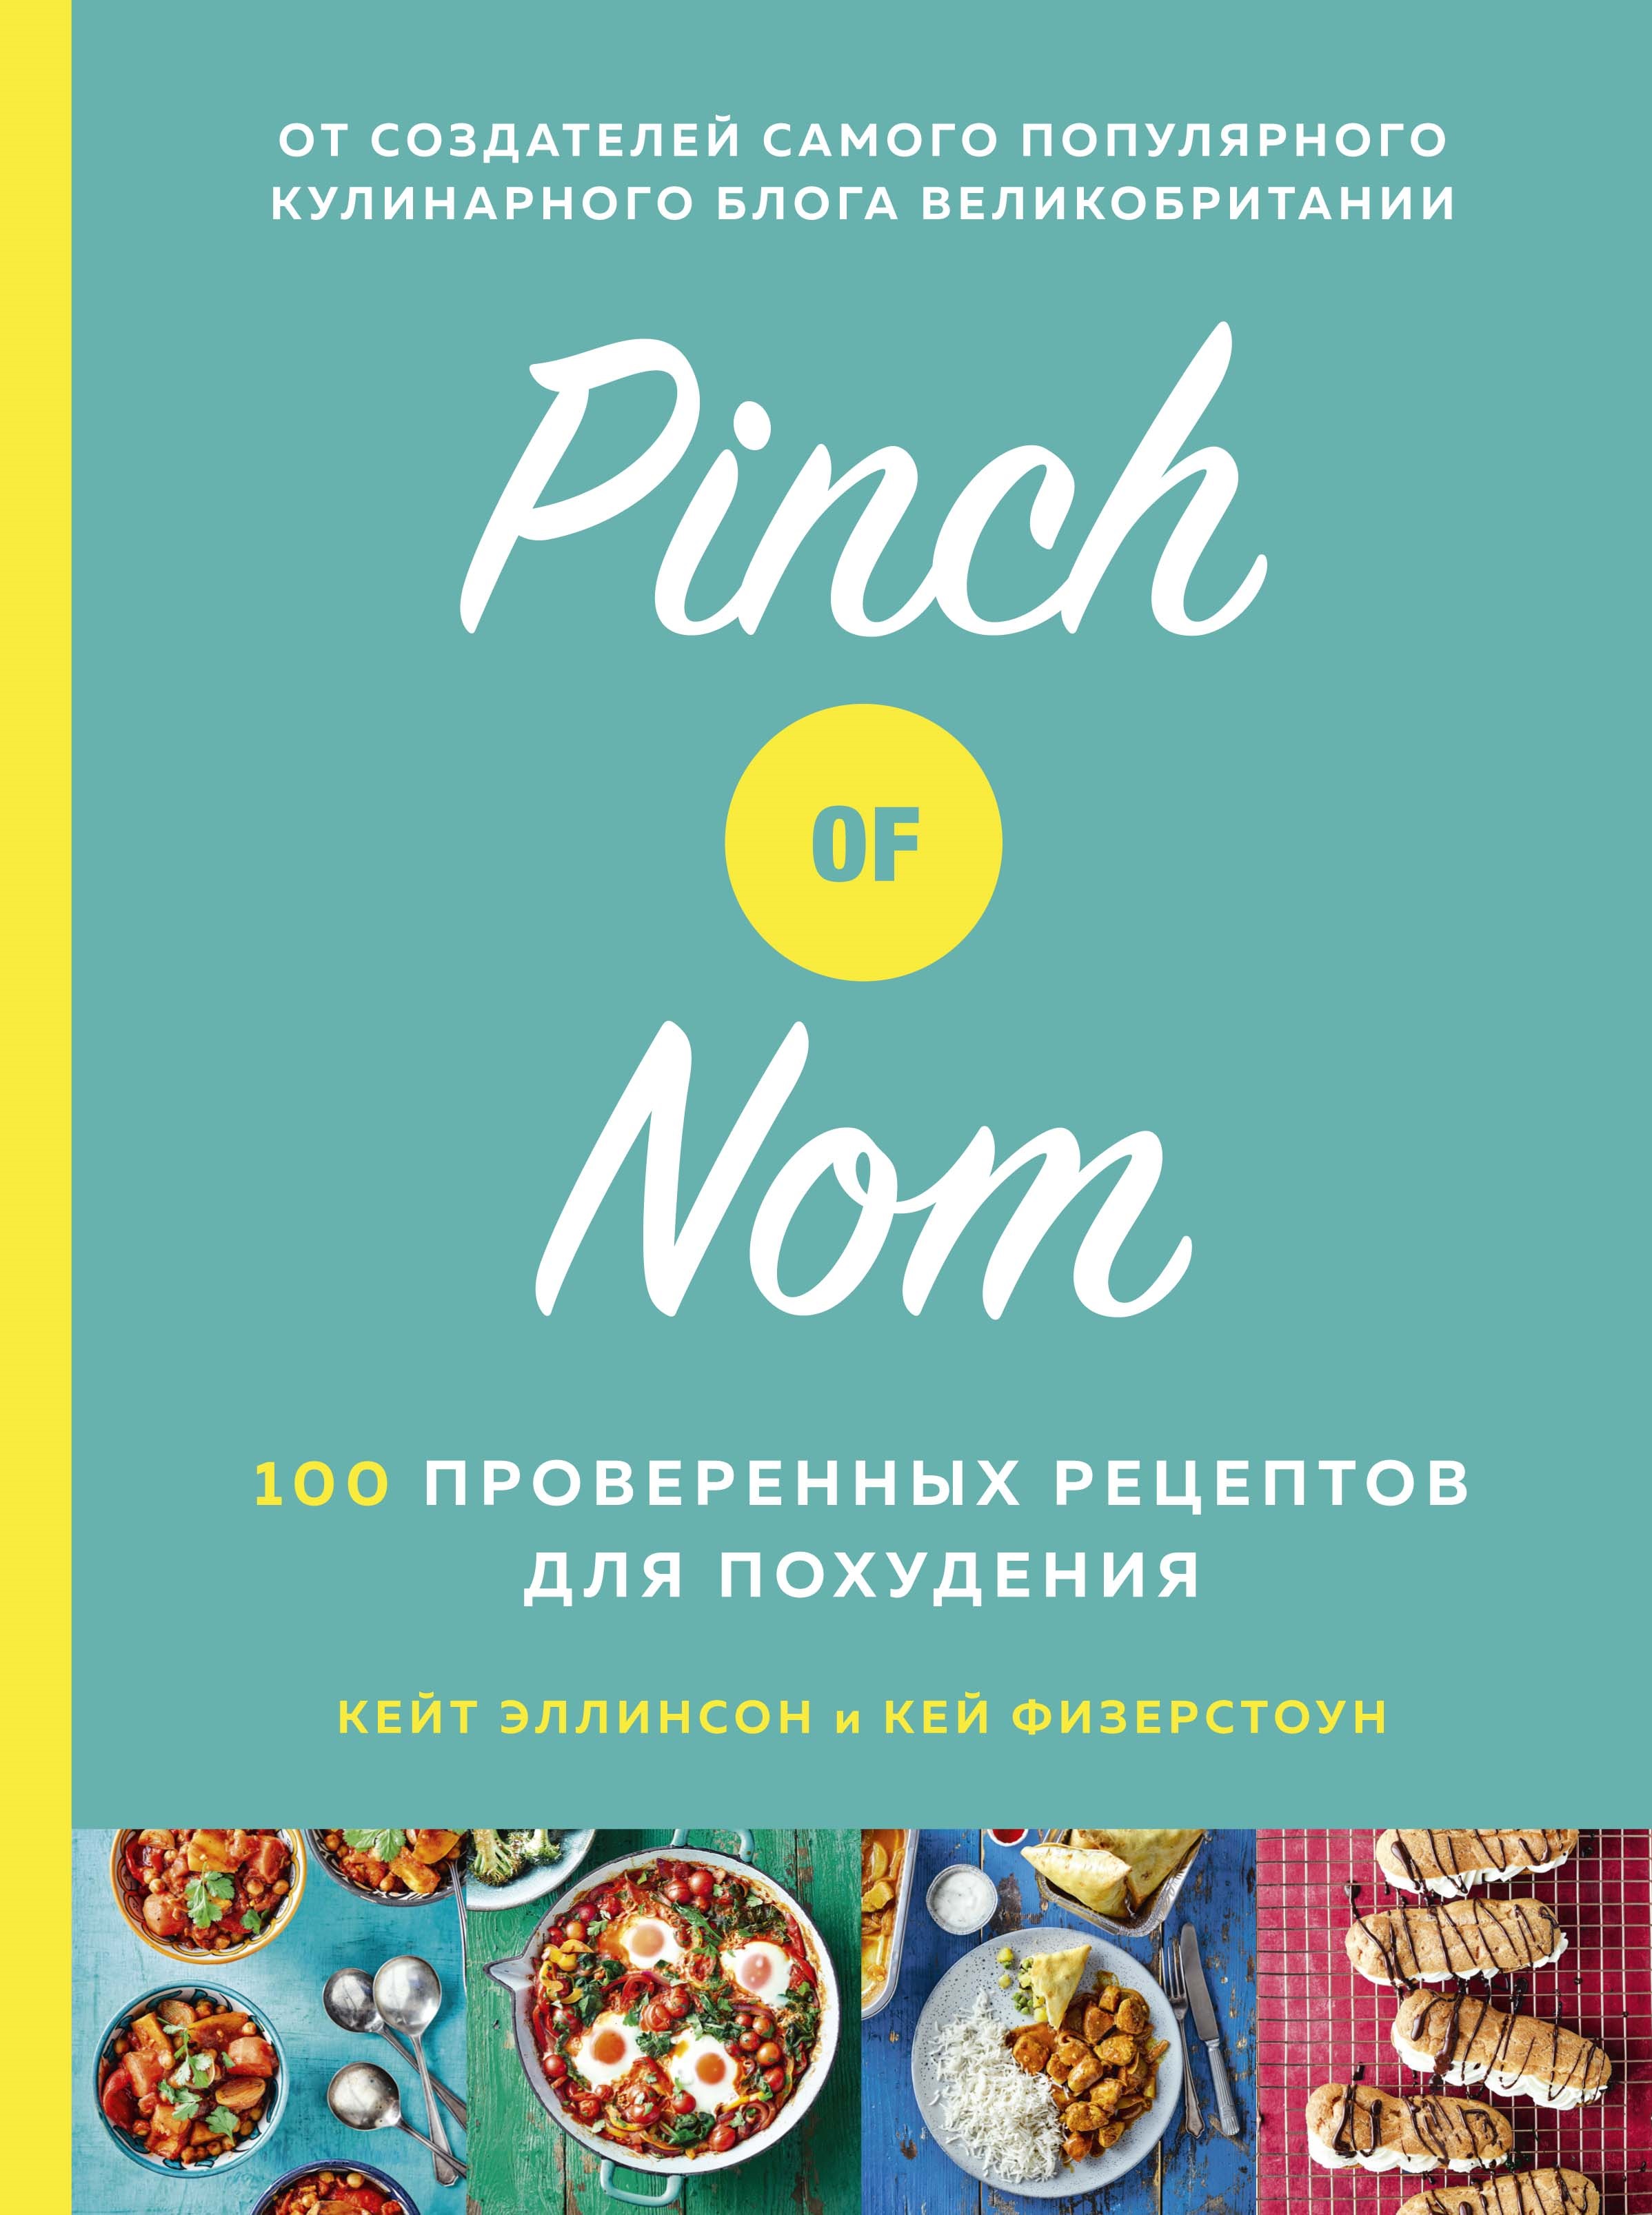 Pinch of Nom: 100 проверенных рецептов для похудения allinson kate физерстоун кей pinch of nom quick